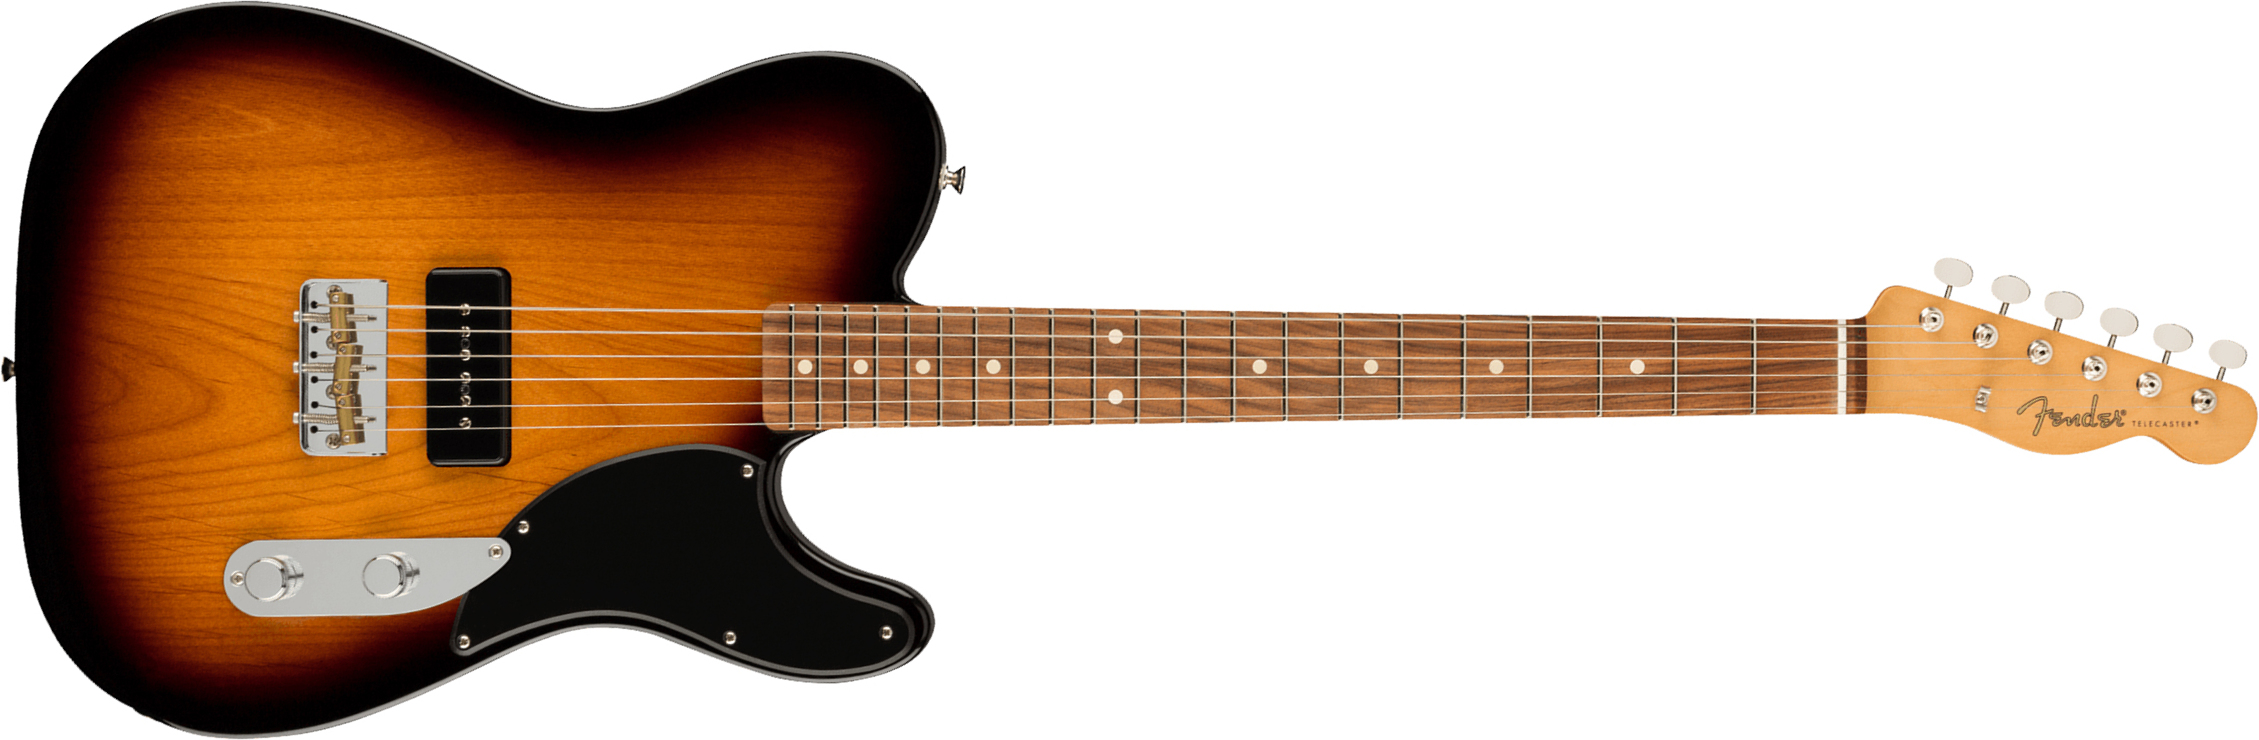 Fender Tele Noventa Mex Pf +housse - 2-color Sunburst - Guitarra eléctrica con forma de tel - Main picture